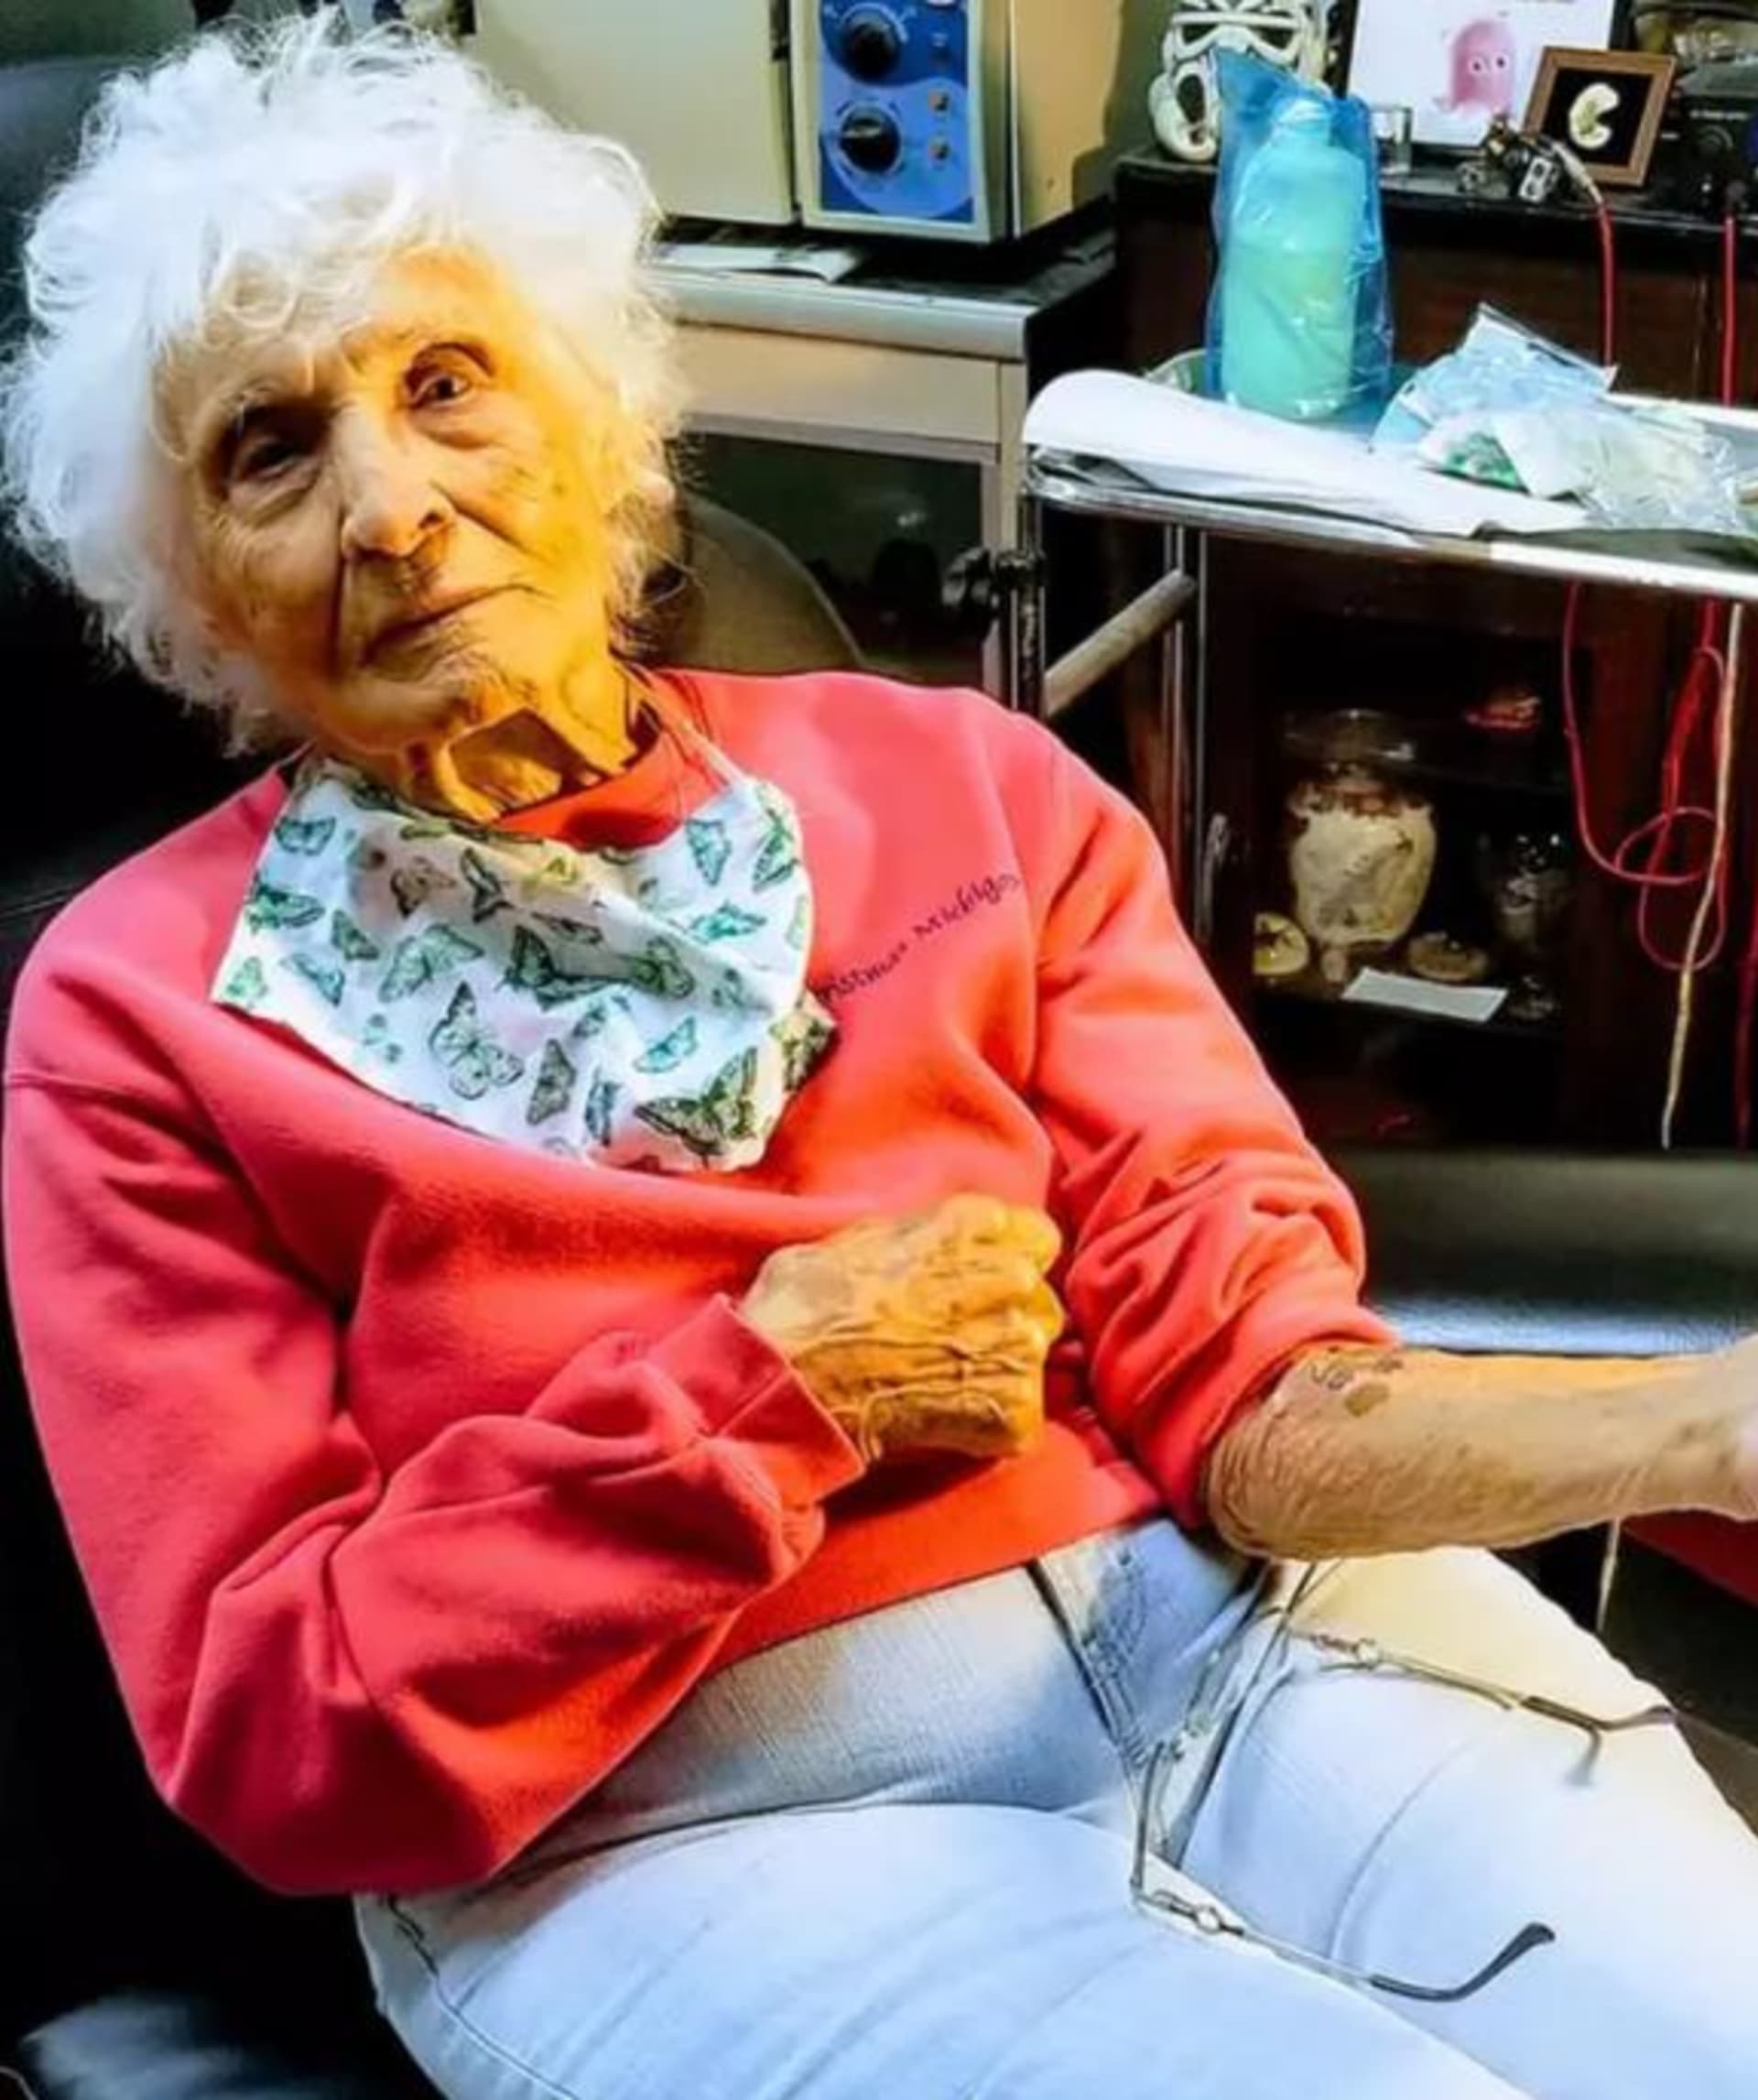 Žena si nechal udělat kérku ve 103 letech 3